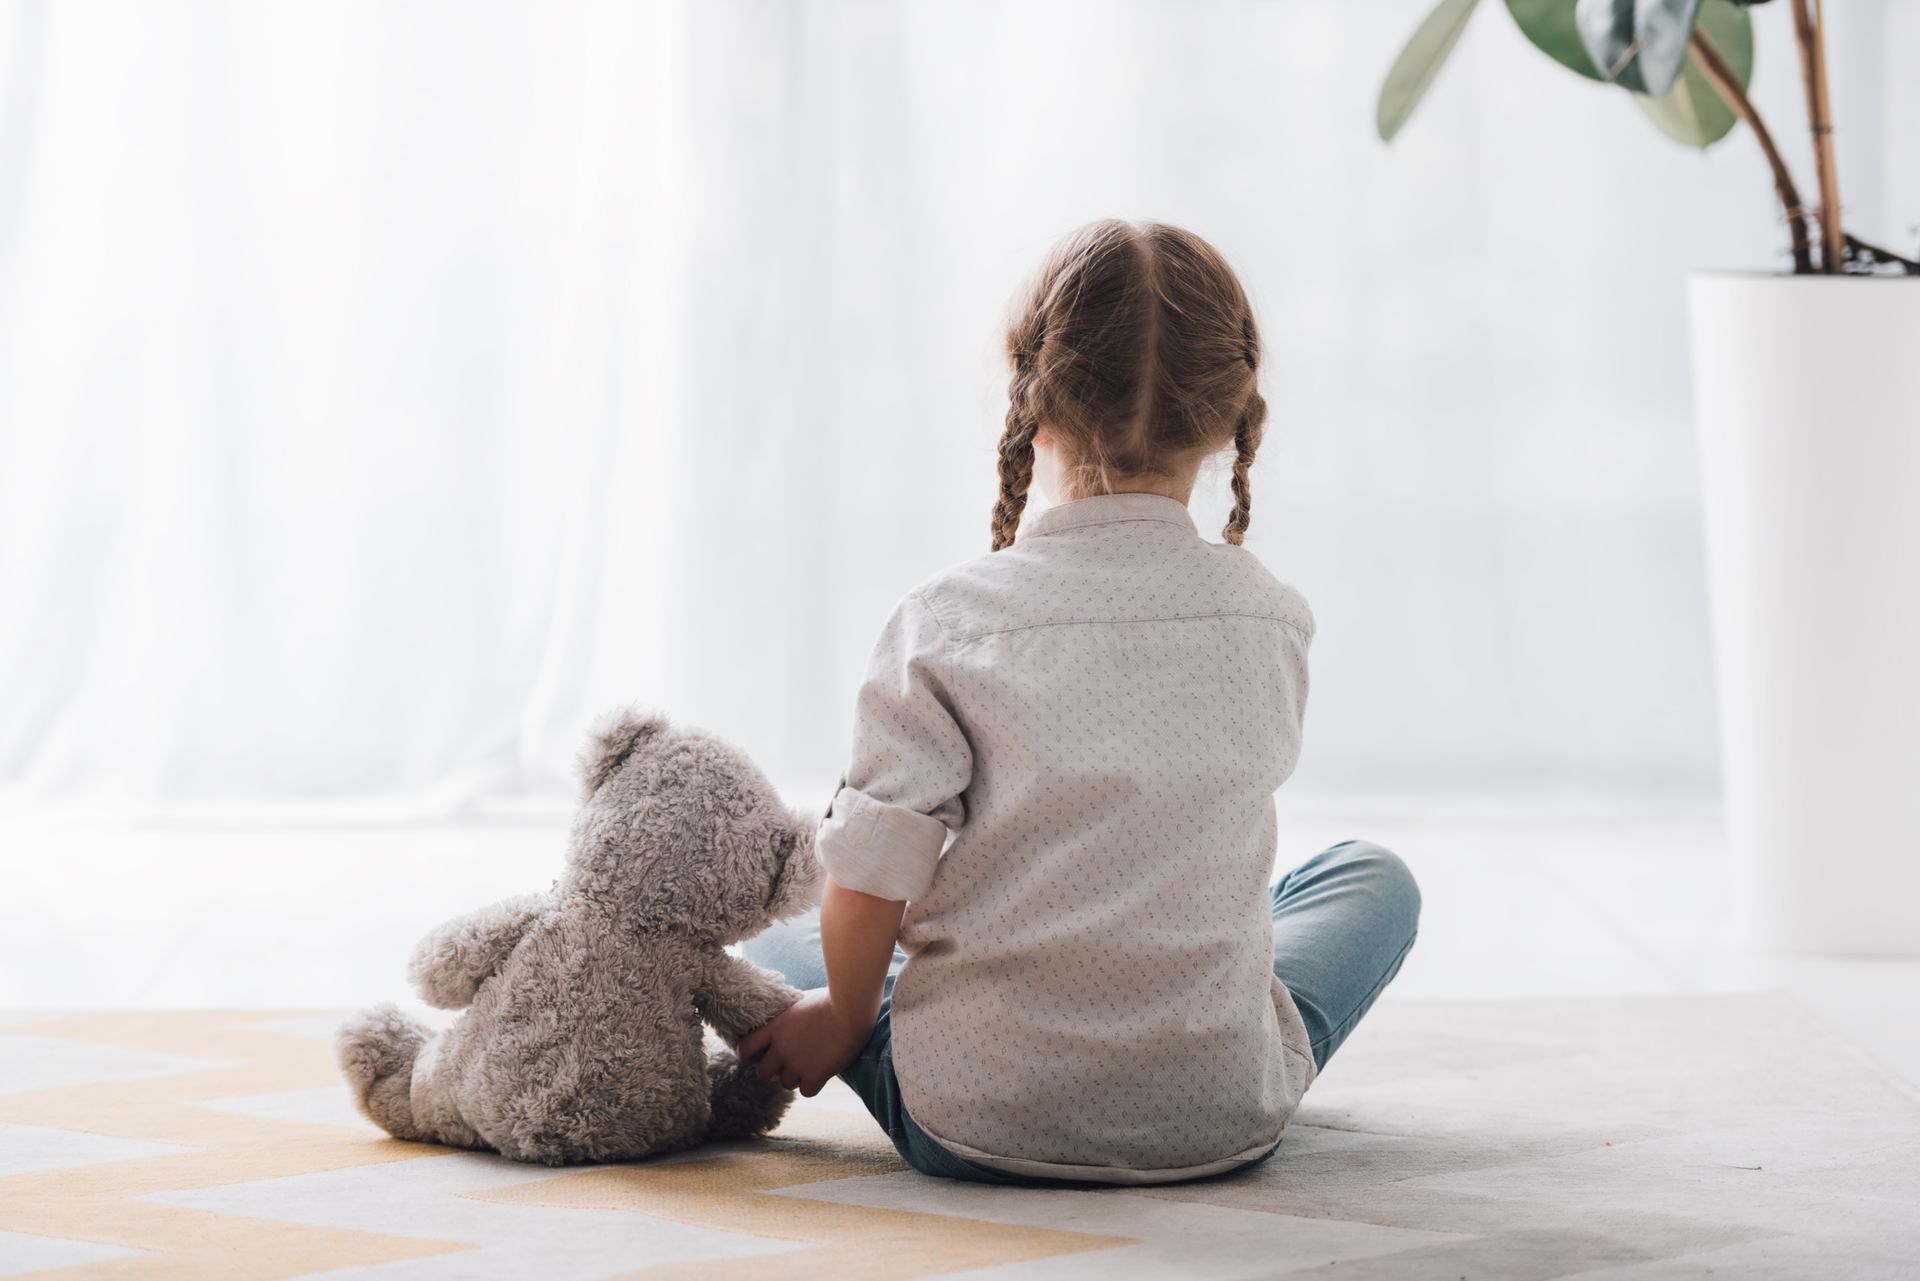 a little girl sits on the floor holding a teddy bear